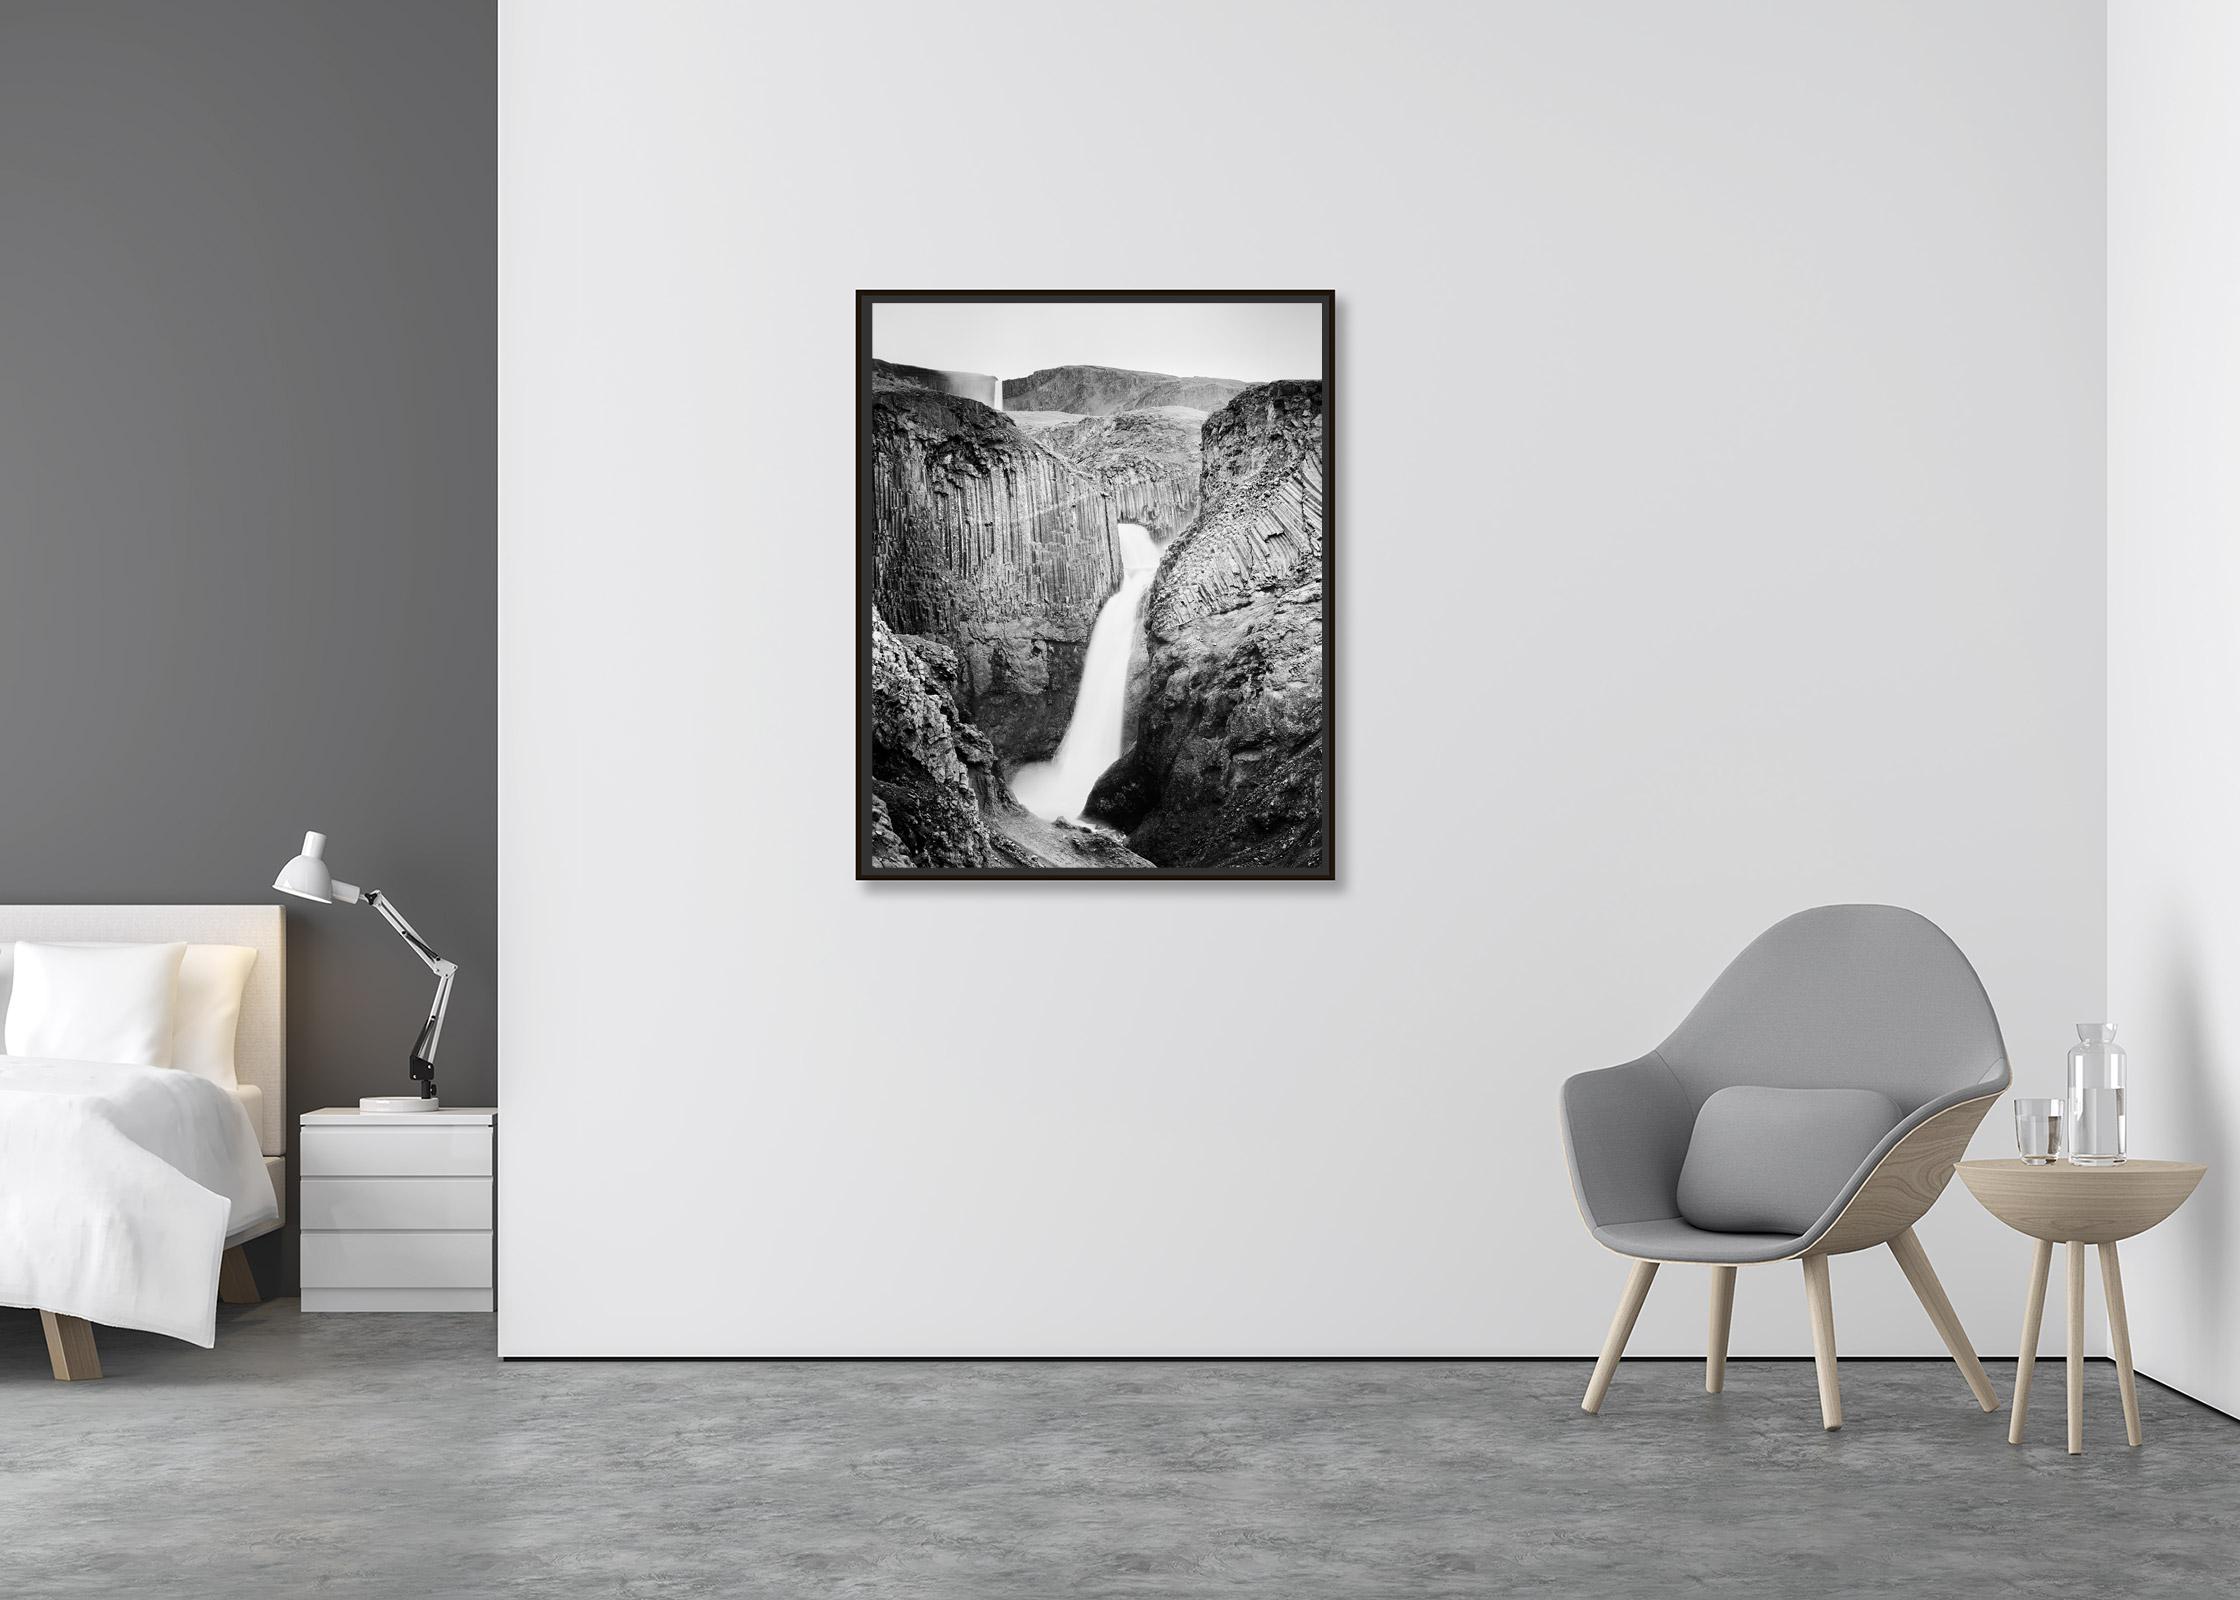 Hengifoss, Wasserfall, Island, Schwarz-Weiß-Fotografie, Landschaft (Zeitgenössisch), Photograph, von Gerald Berghammer, Ina Forstinger